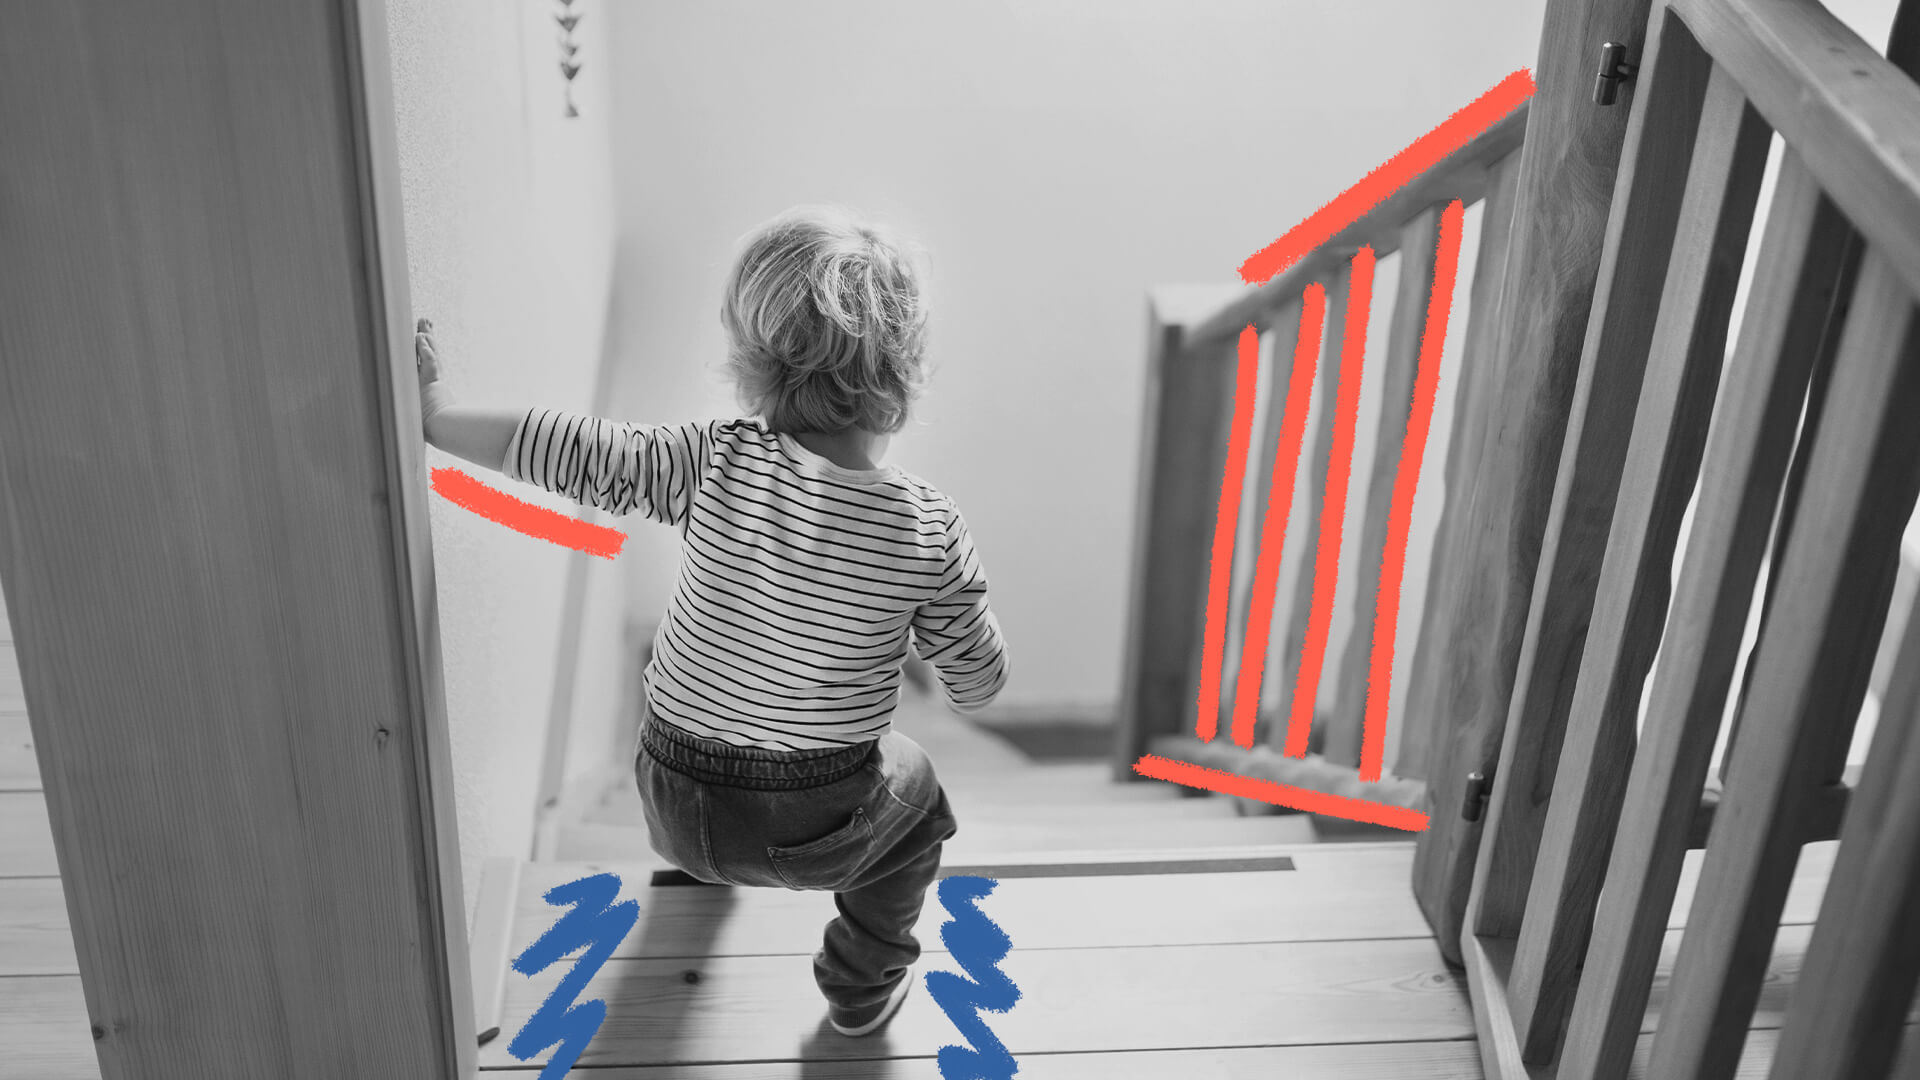 Imagem em preto e branco de uma criança descendo uma escada. A foto ilustra uma matéria sobre acidentes domésticos.